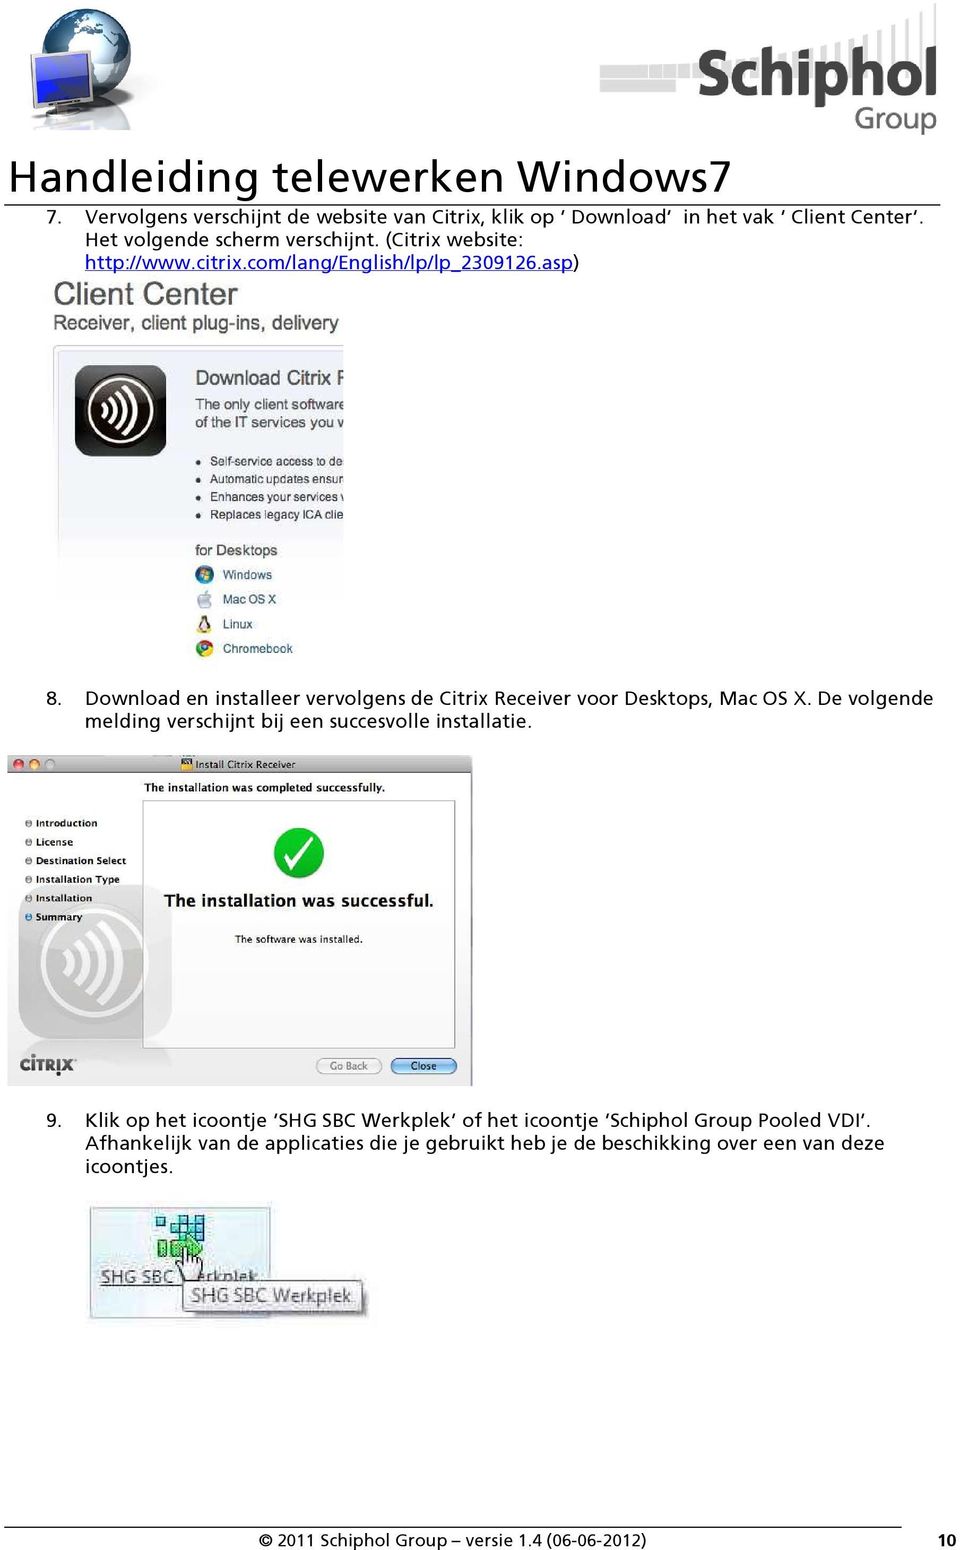 Download en installeer vervolgens de Citrix Receiver voor Desktops, Mac OS X. De volgende melding verschijnt bij een succesvolle installatie.